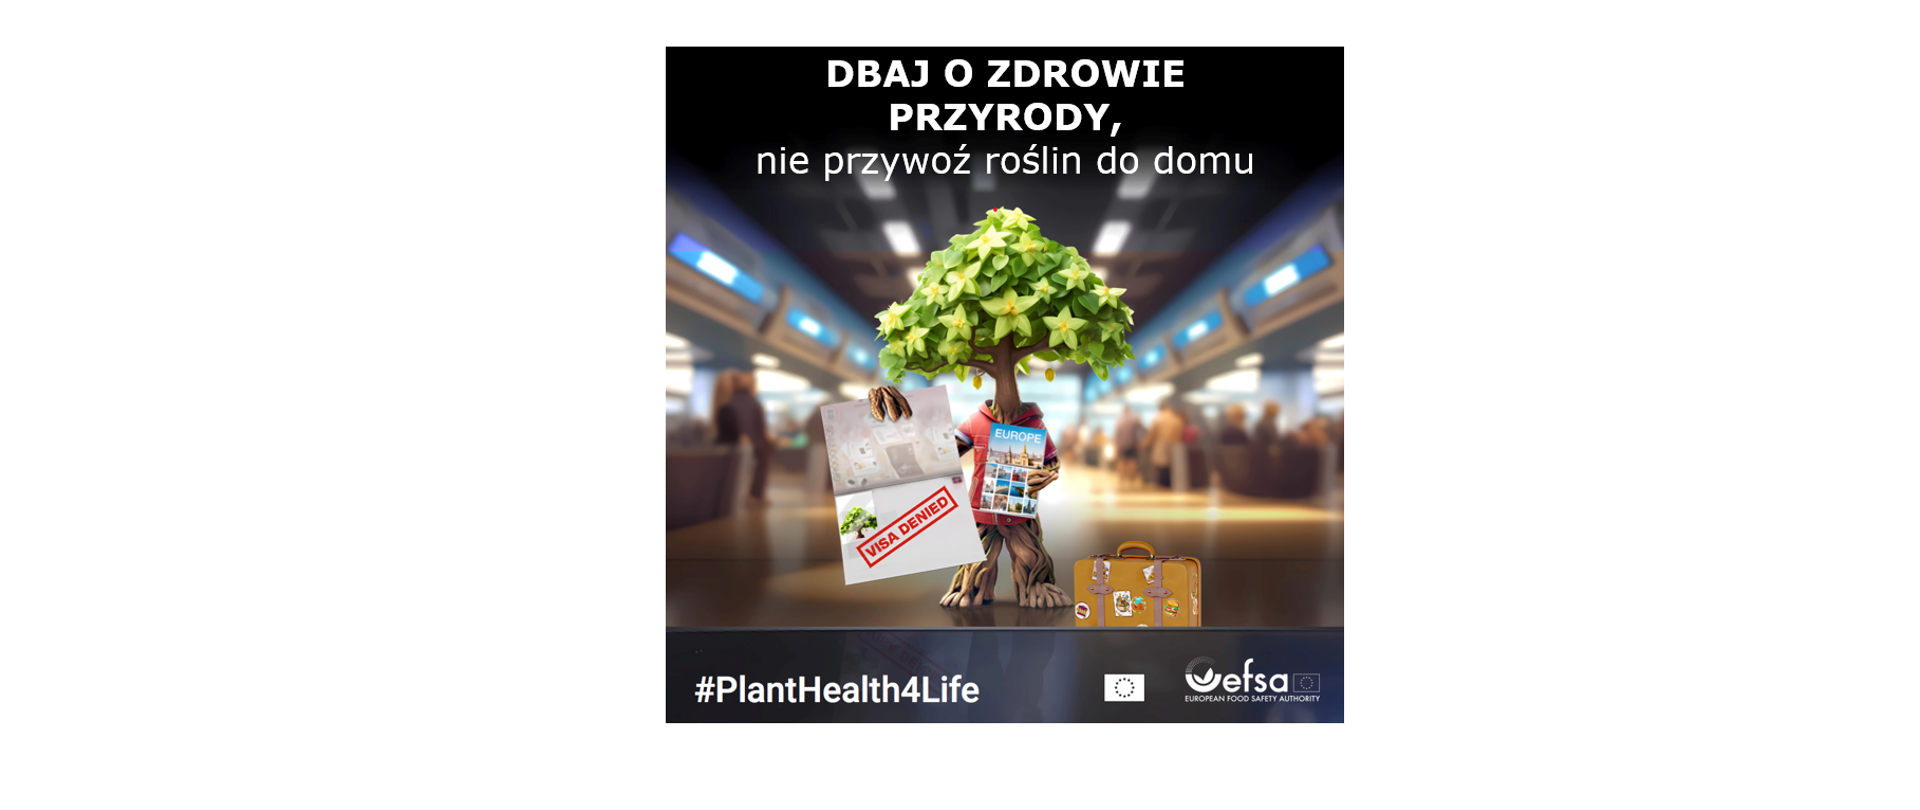  To jest plakat z przesłaniem dotyczącym zdrowia roślin i ważności nieprzynoszenia roślin do domu w celu ochrony środowiska. Na plakacie widnieje antropomorficzne drzewo stojące na lotnisku, trzymające walizkę z naklejkami z różnych krajów oraz paszport z pieczątką “VISA DENIED”. Drzewo ma zaniepokojoną minę. Powyżej sceny znajduje się napis po polsku: “DBAJ O ZDROWIE PRZYRODY, nie przywoź roślin do domu.” Na dole plakatu widnieje hashtag “#PlantHealth4Life” oraz logo EFSA (Europejski Urząd ds. Bezpieczeństwa Żywności). To ciekawe, że plakat wykorzystuje personifikację, aby przekazać swoje przesłanie na temat zdrowia roślin i kontroli granicznej w odniesieniu do produktów rolnych w przystępny sposób.